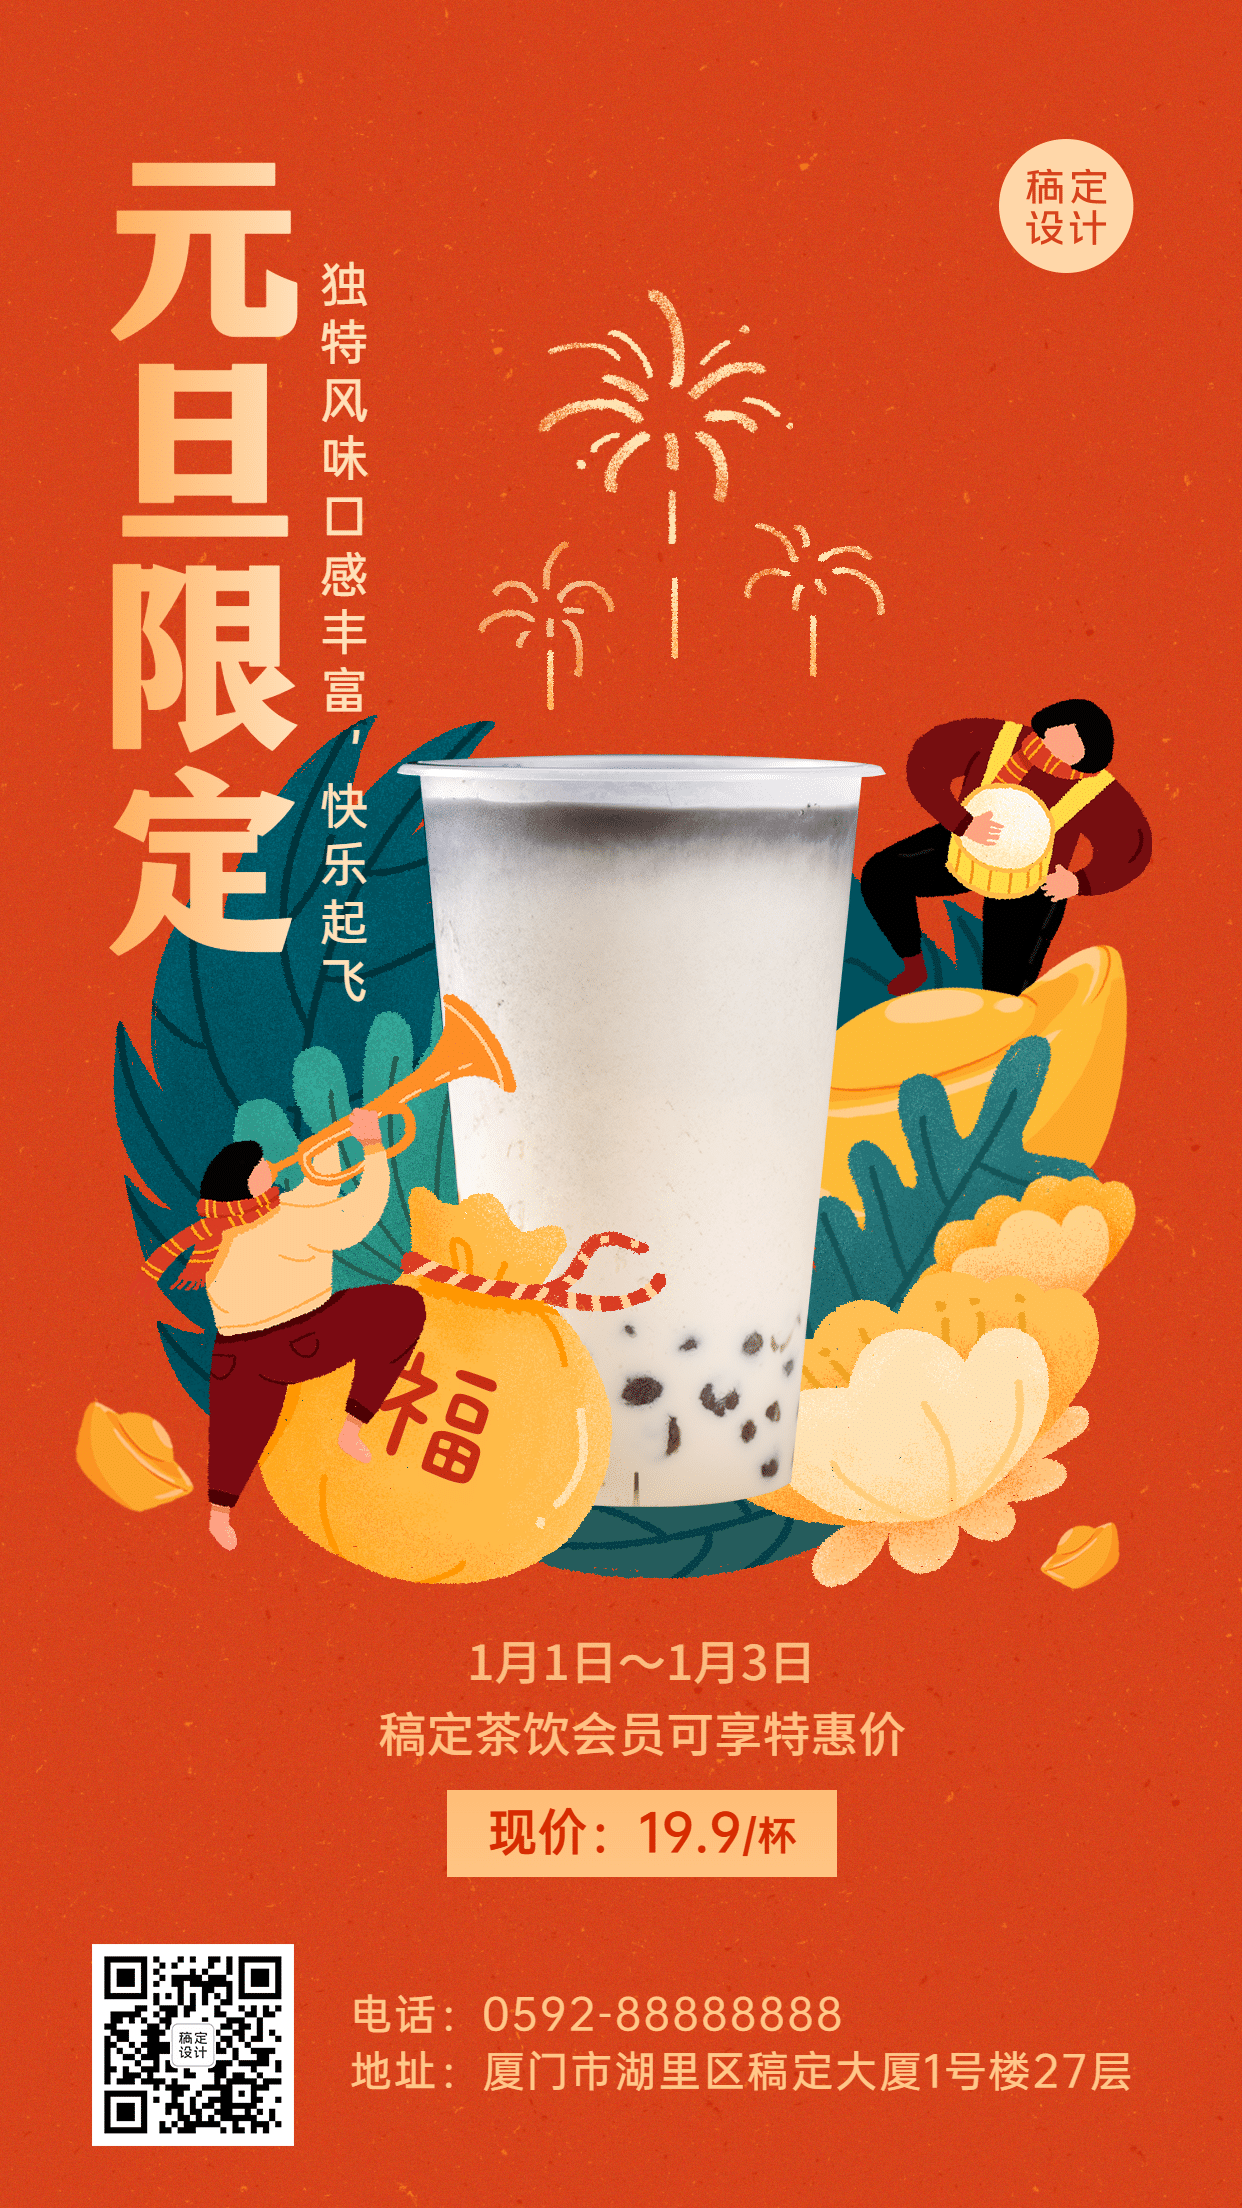 元旦奶茶饮品产品营销实景竖版海报预览效果